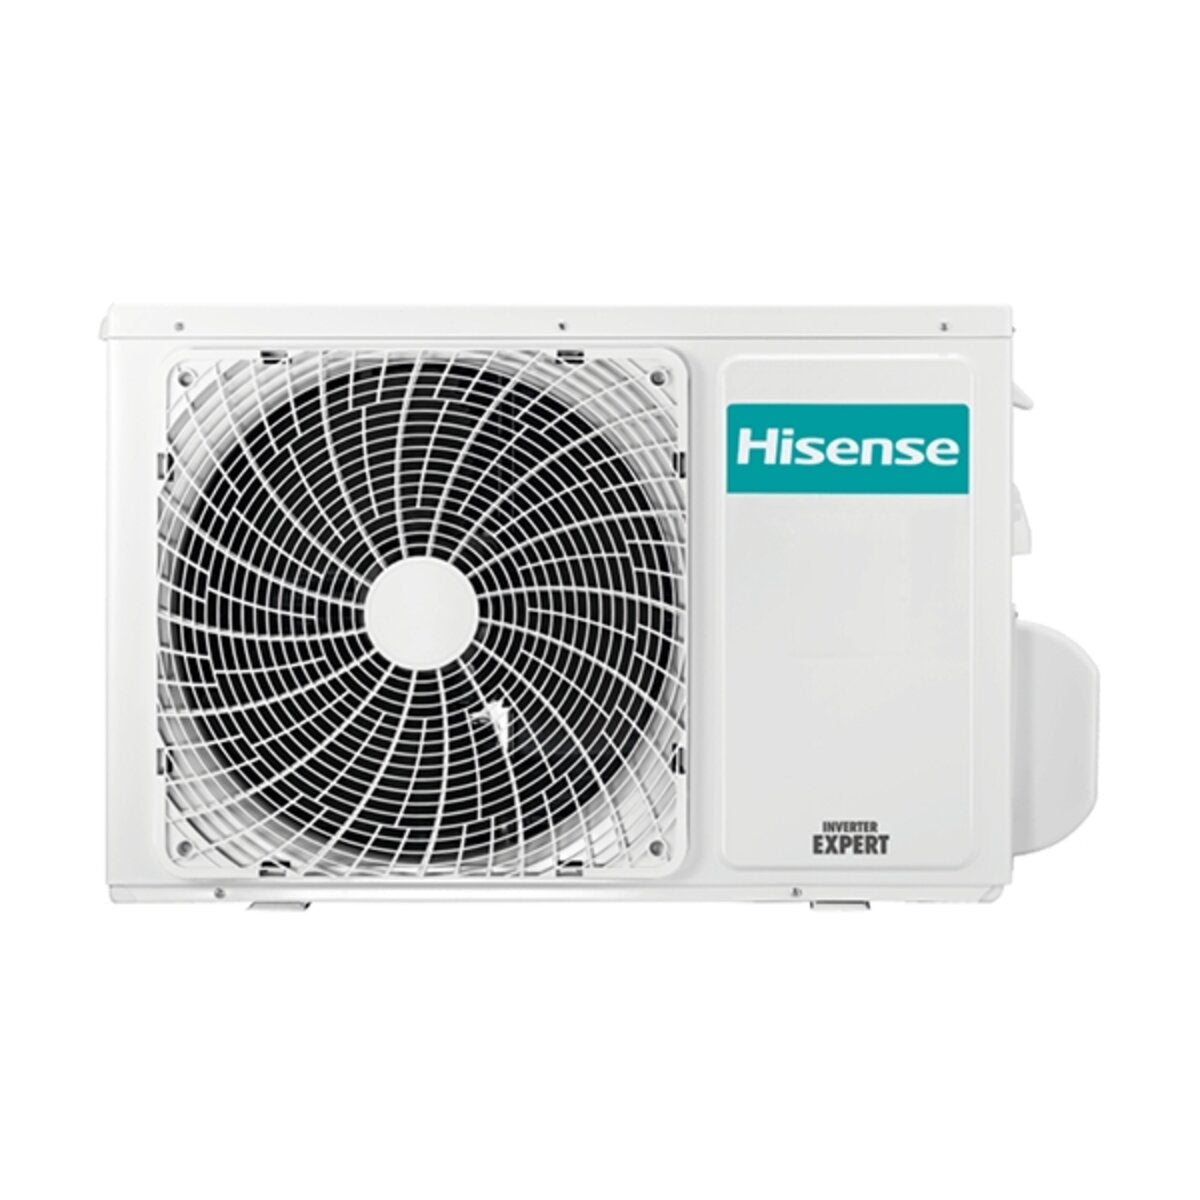 Hisense air conditioner Cassette ACT dual split 9000+9000 BTU inverter A++ outdoor unit 4.1 kW